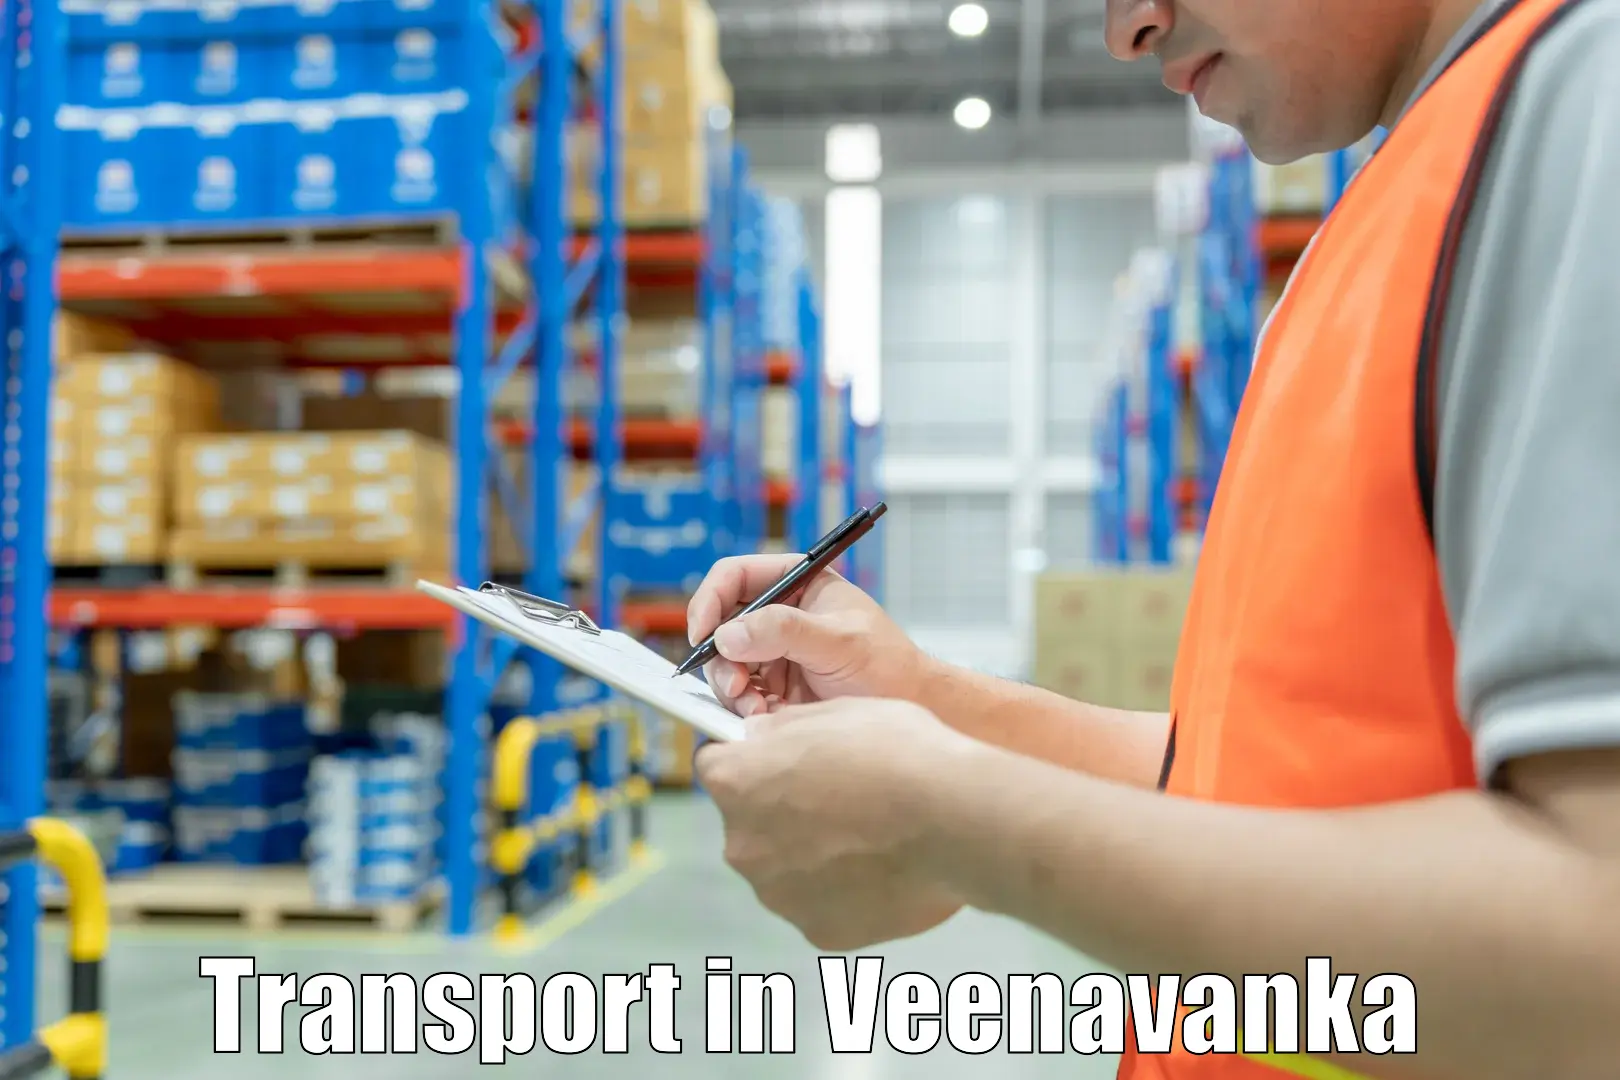 Vehicle transport services in Veenavanka